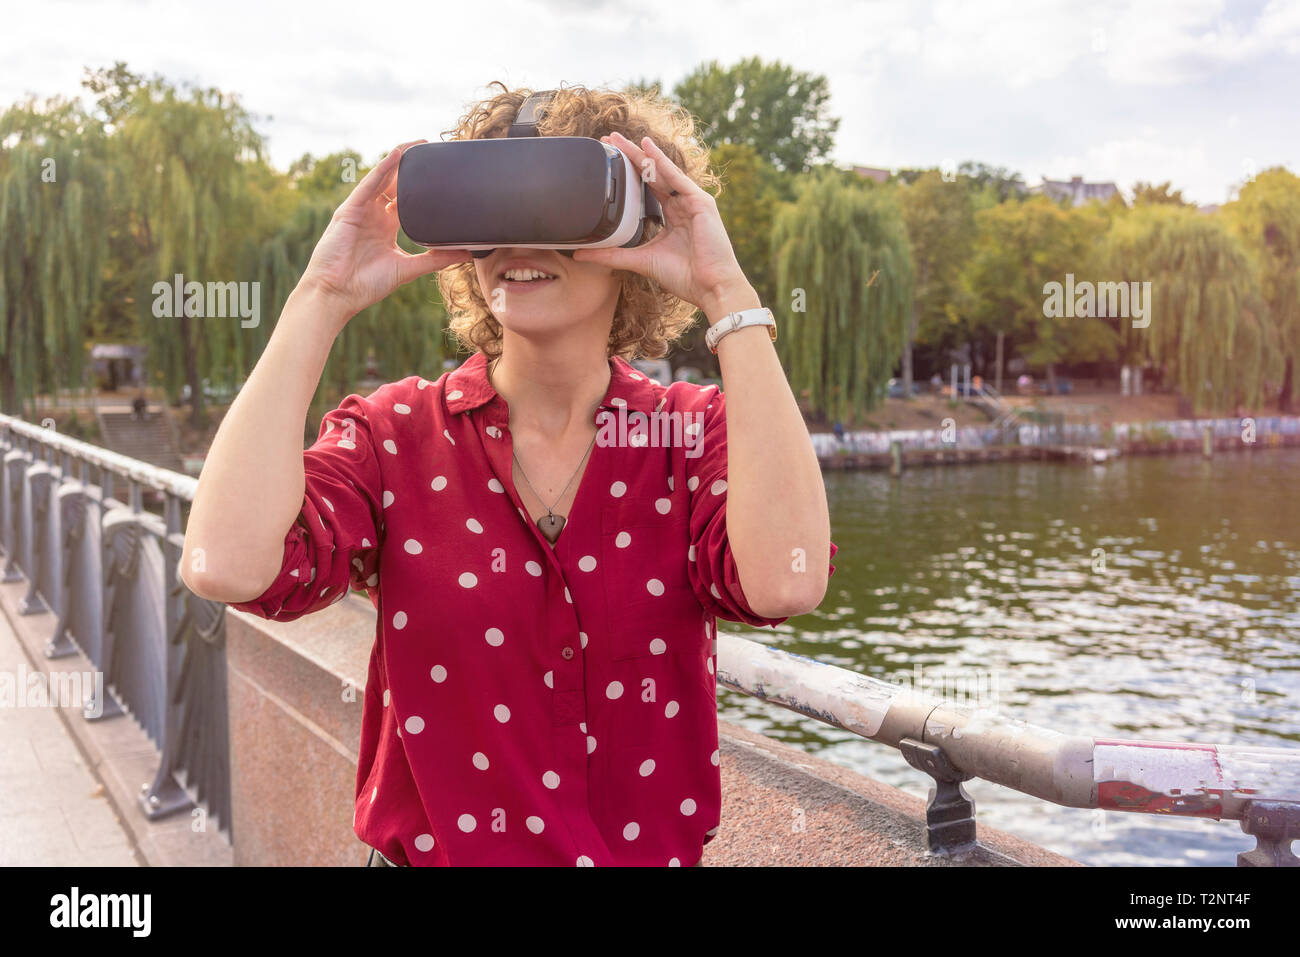 Junge Frau mit VR-Headset auf Brücke, Fluss im Hintergrund, Berlin, Deutschland Stockfoto